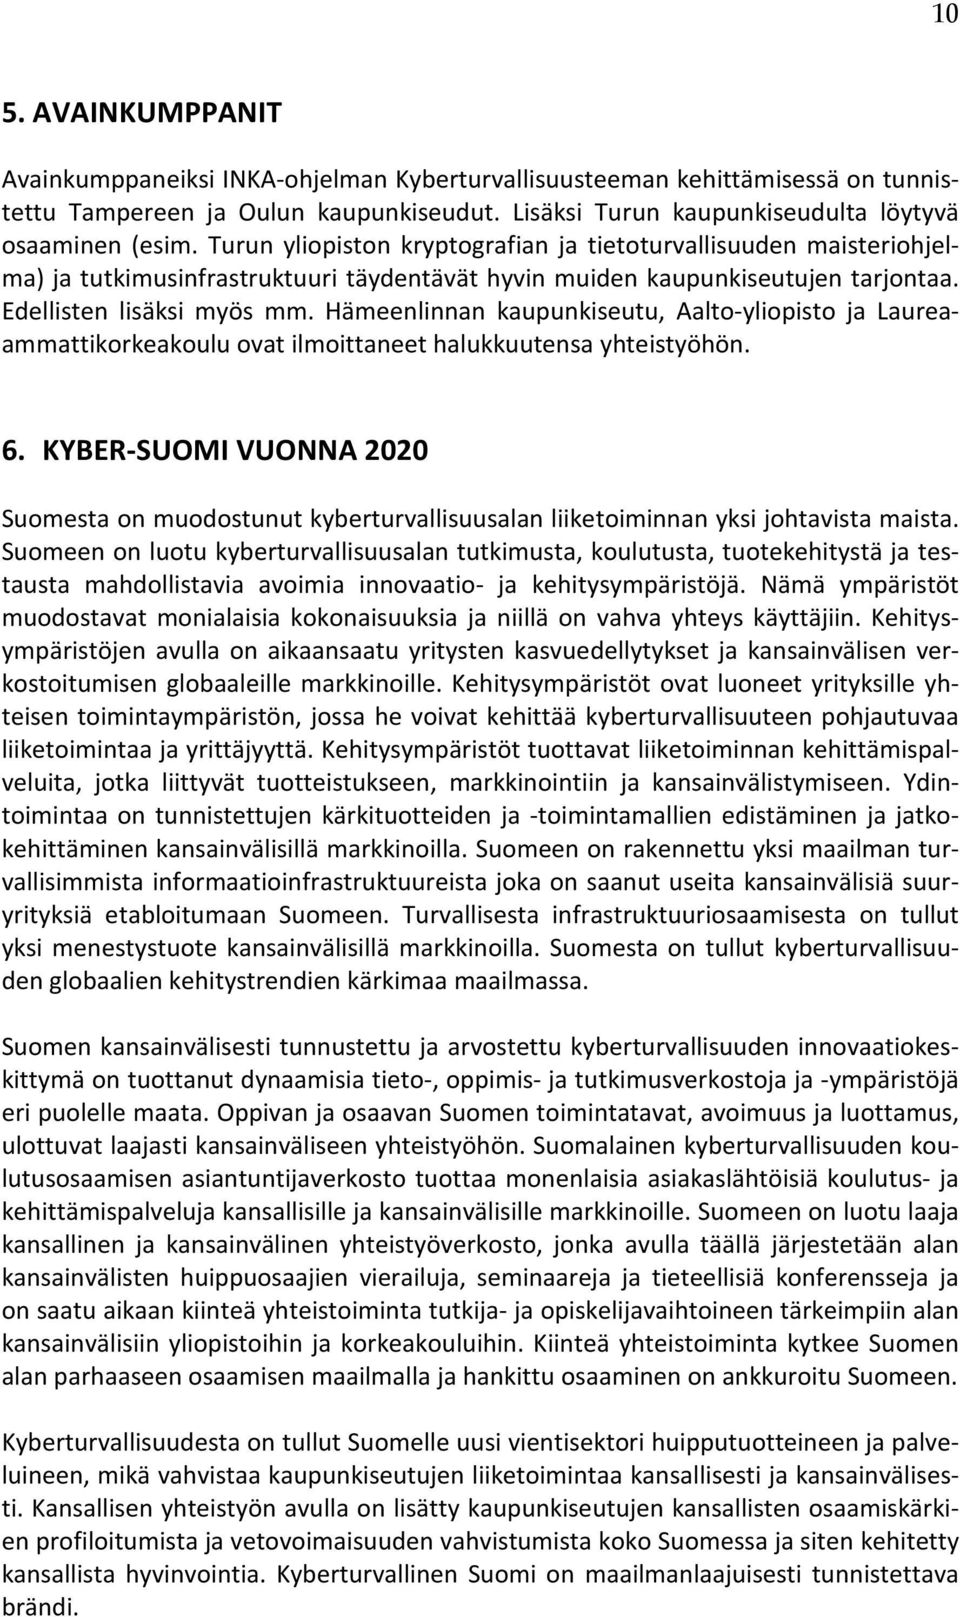 Hämeenlinnan kaupunkiseutu, Aalto-yliopisto ja Laureaammattikorkeakoulu ovat ilmoittaneet halukkuutensa yhteistyöhön. 6.